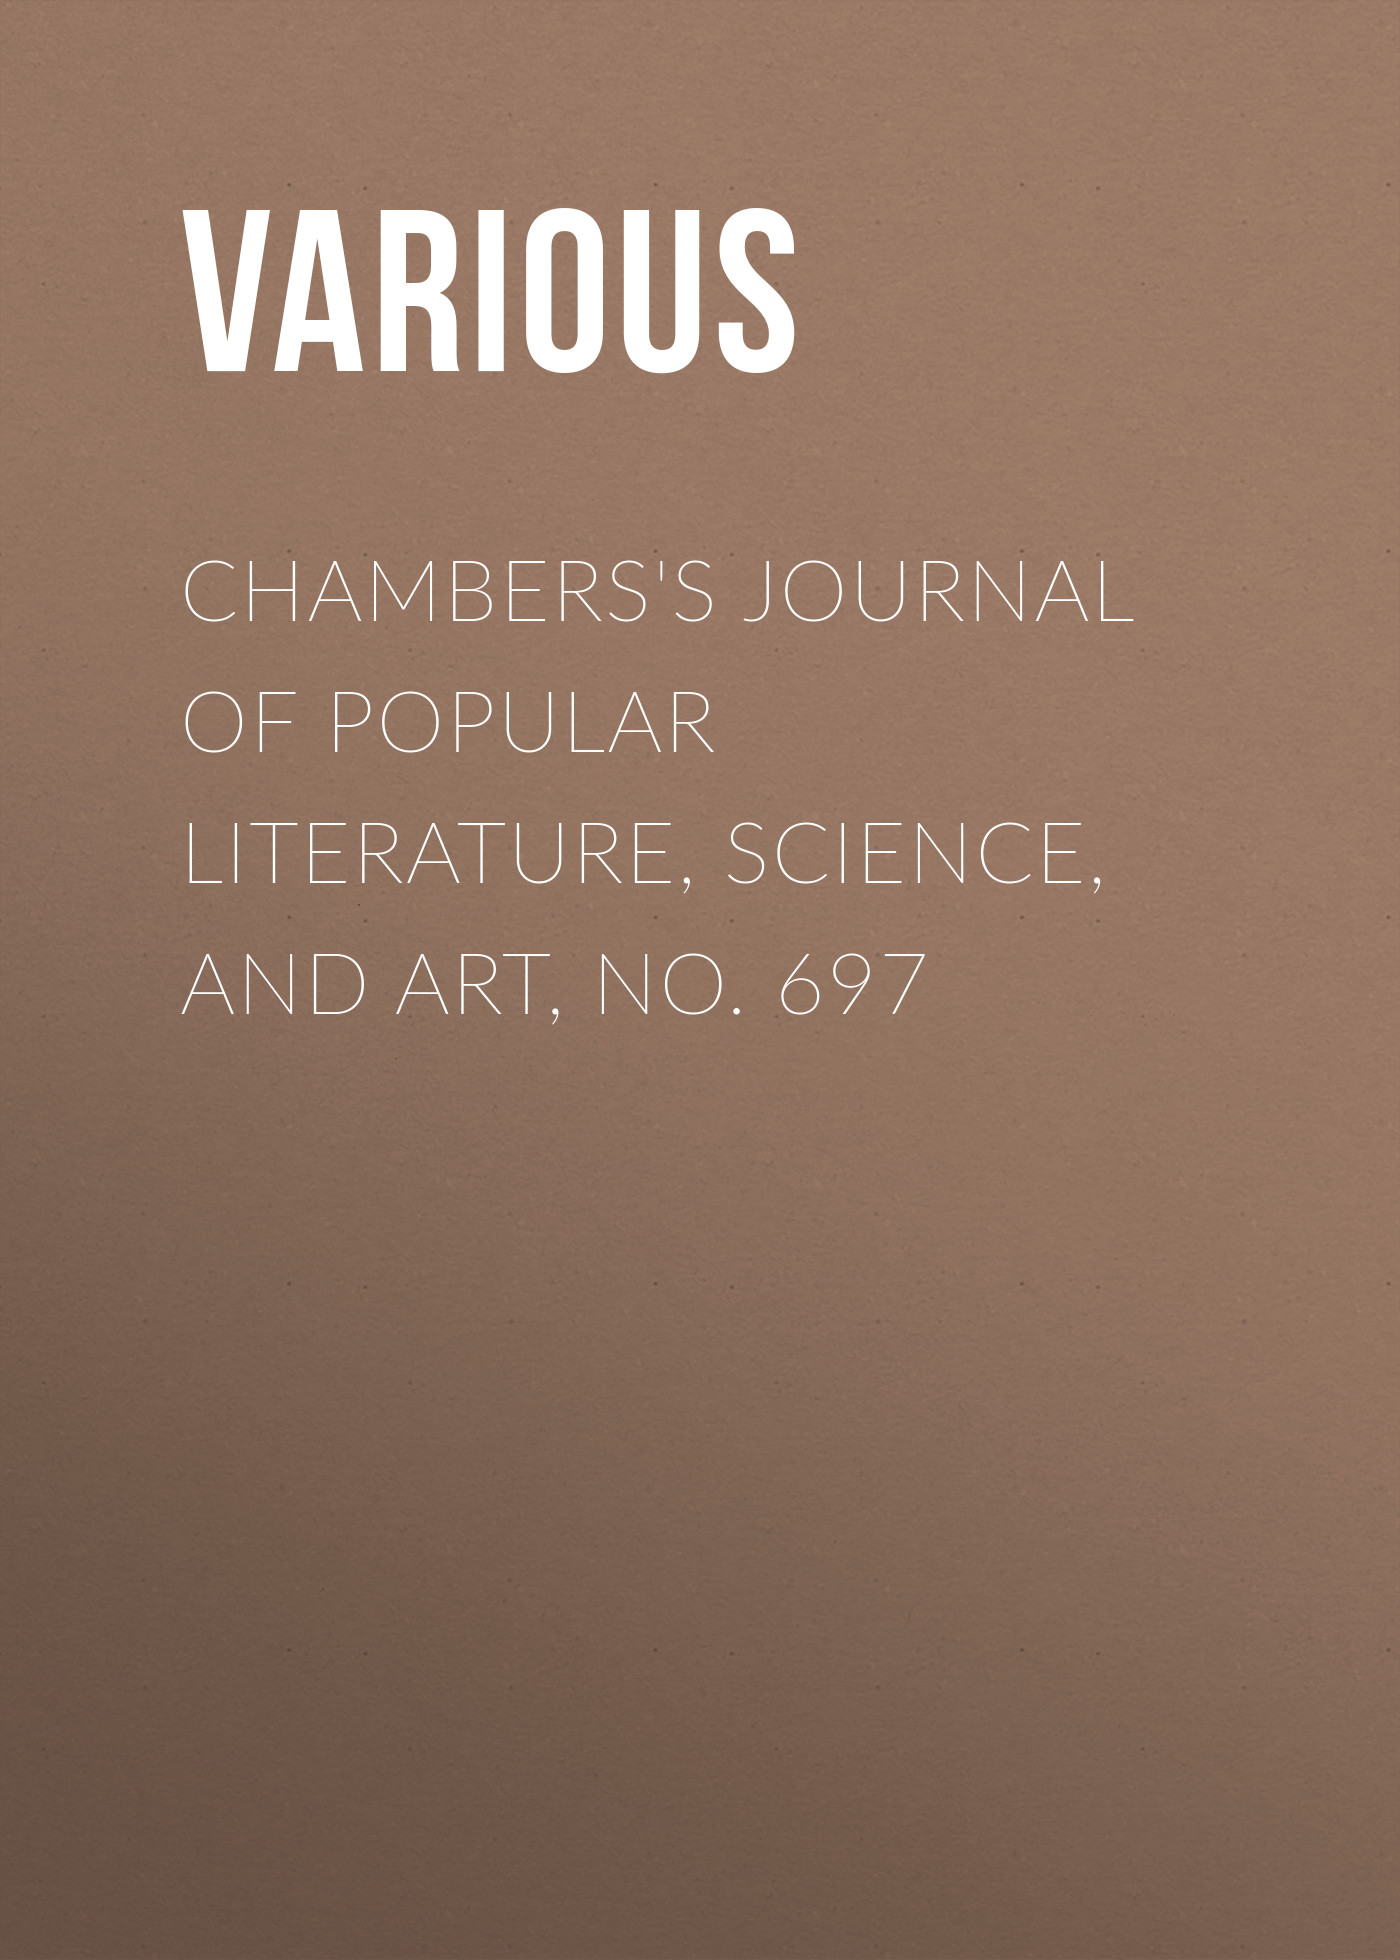 Книга Chambers's Journal of Popular Literature, Science, and Art, No. 697 из серии , созданная  Various, может относится к жанру Журналы, Зарубежная образовательная литература. Стоимость электронной книги Chambers's Journal of Popular Literature, Science, and Art, No. 697 с идентификатором 25569783 составляет 0 руб.